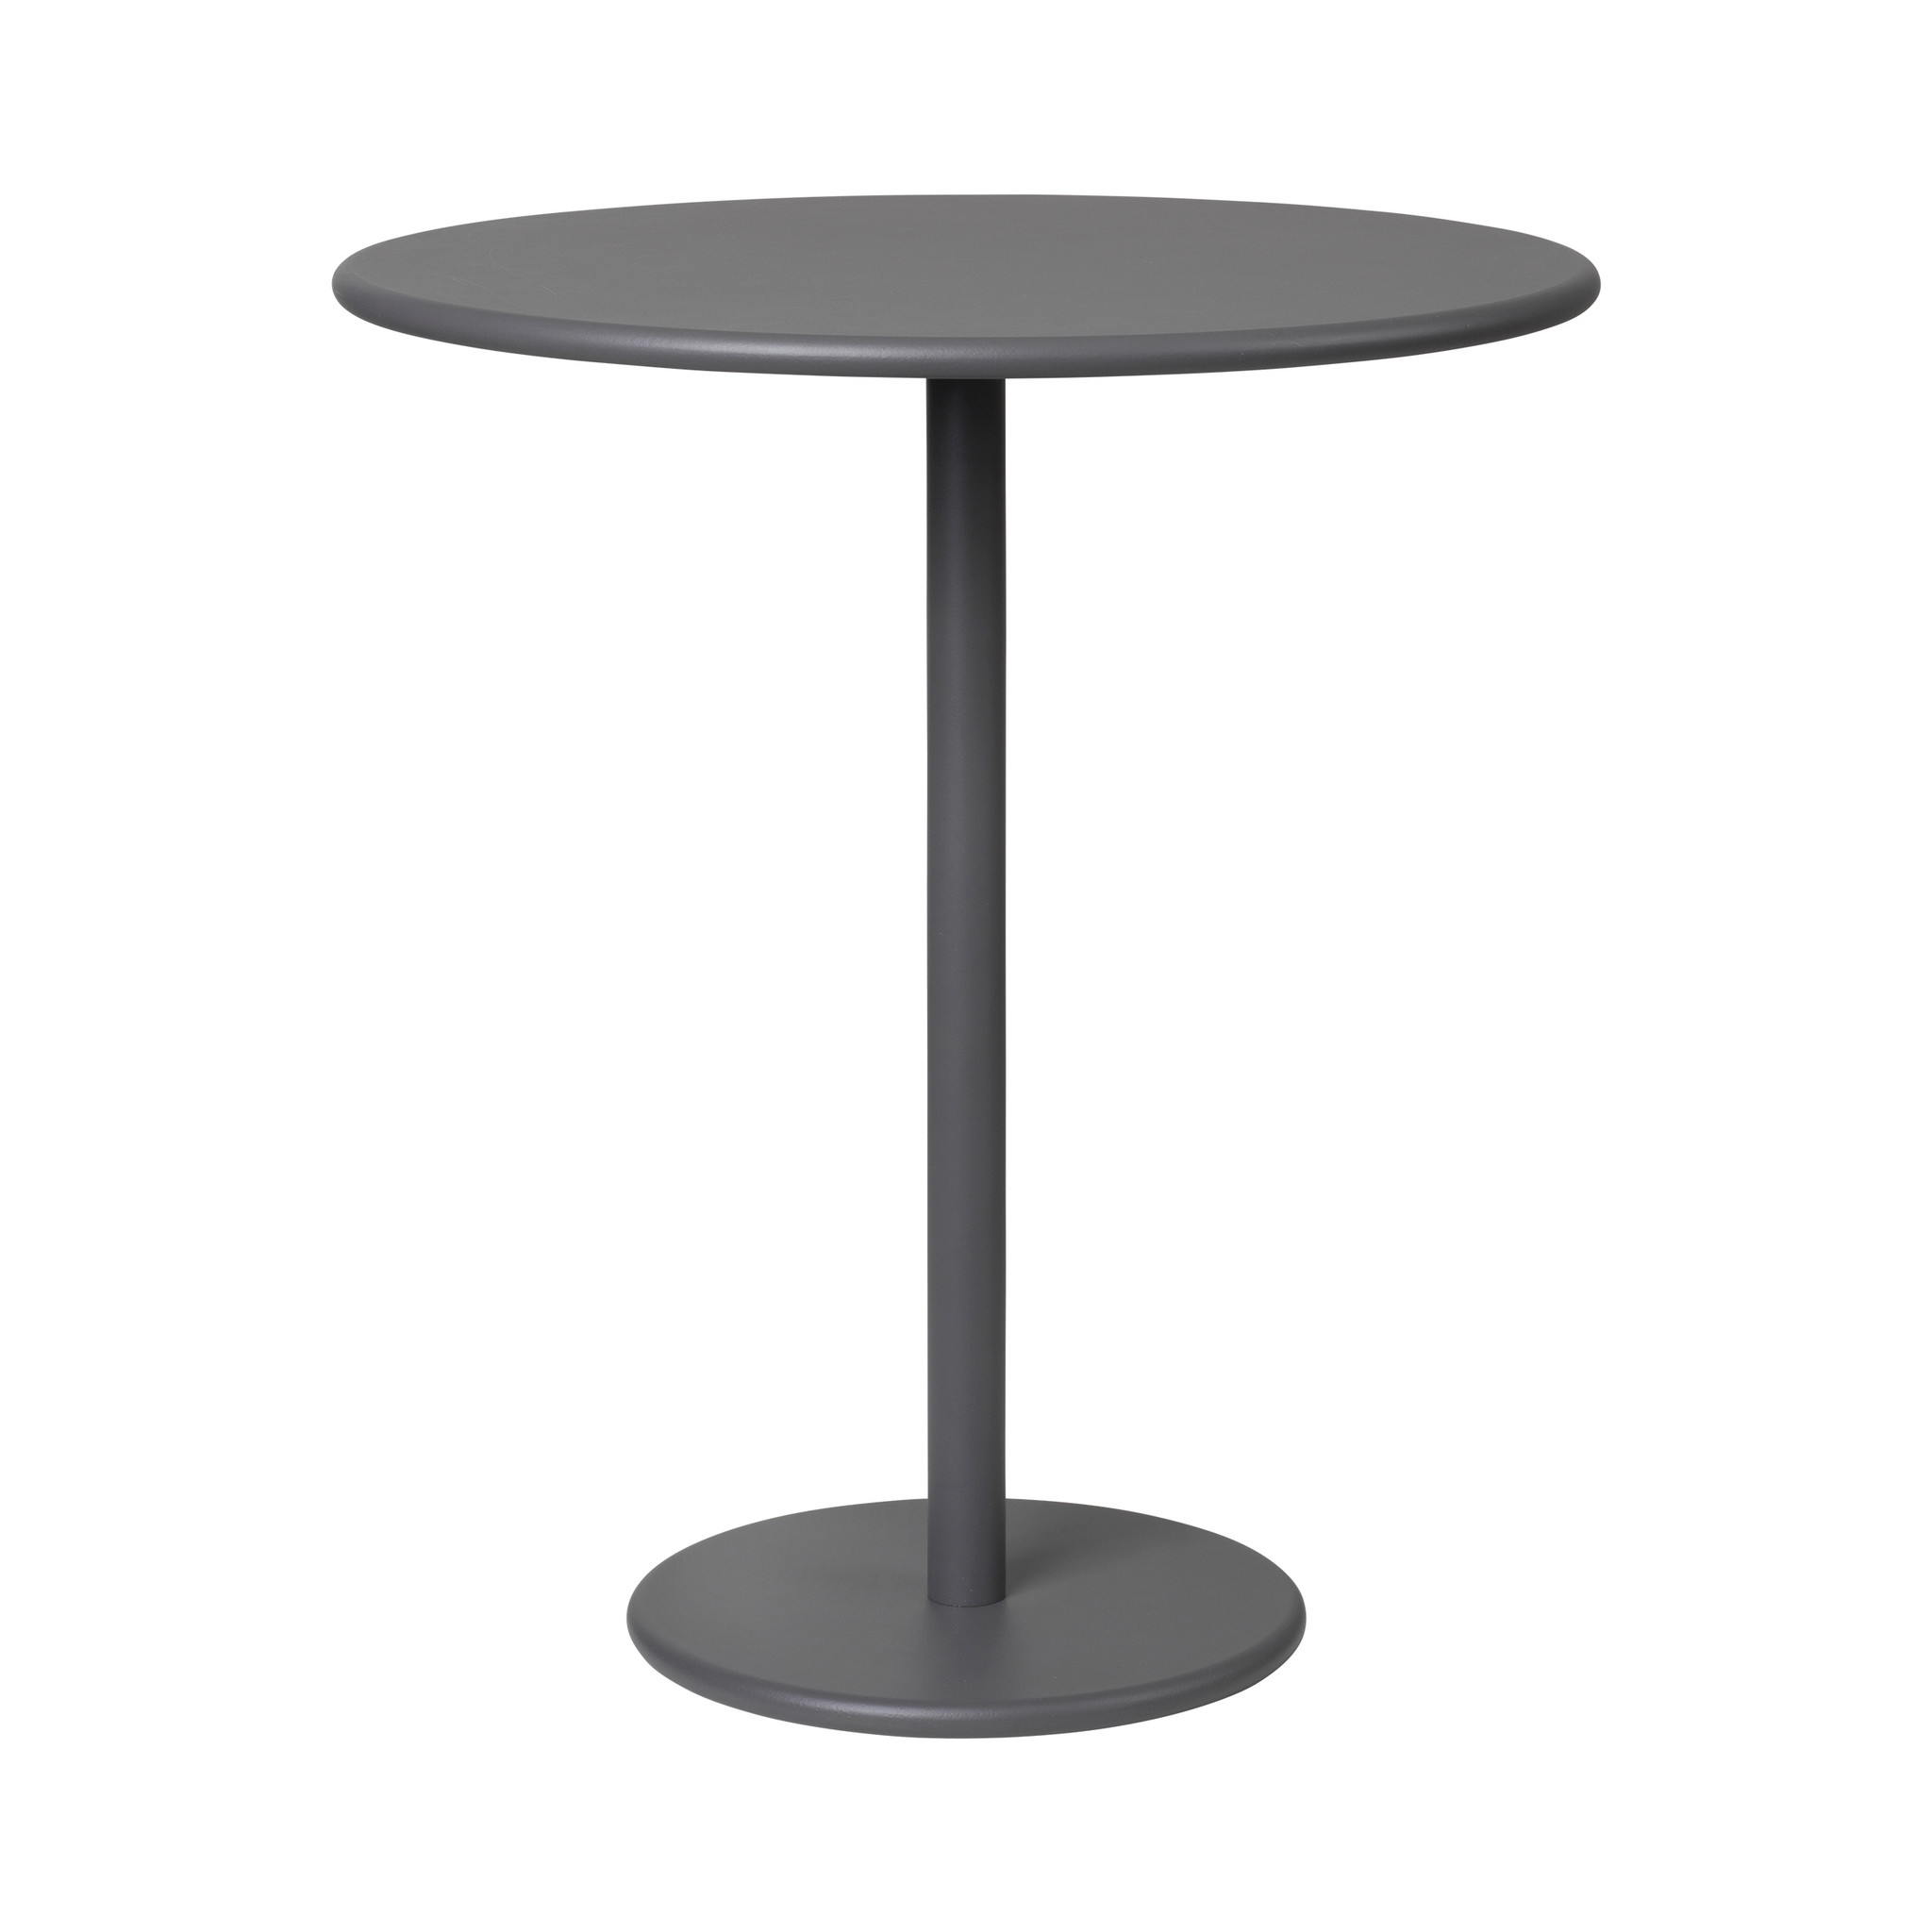 Стол круглый 1 м диаметр. Стол Суперкруг delo-Design 700мм(металл) серый. Стол барный 70х70 110 высота черный. Барный круглый стол Doris 60 см. Стол delo Design.